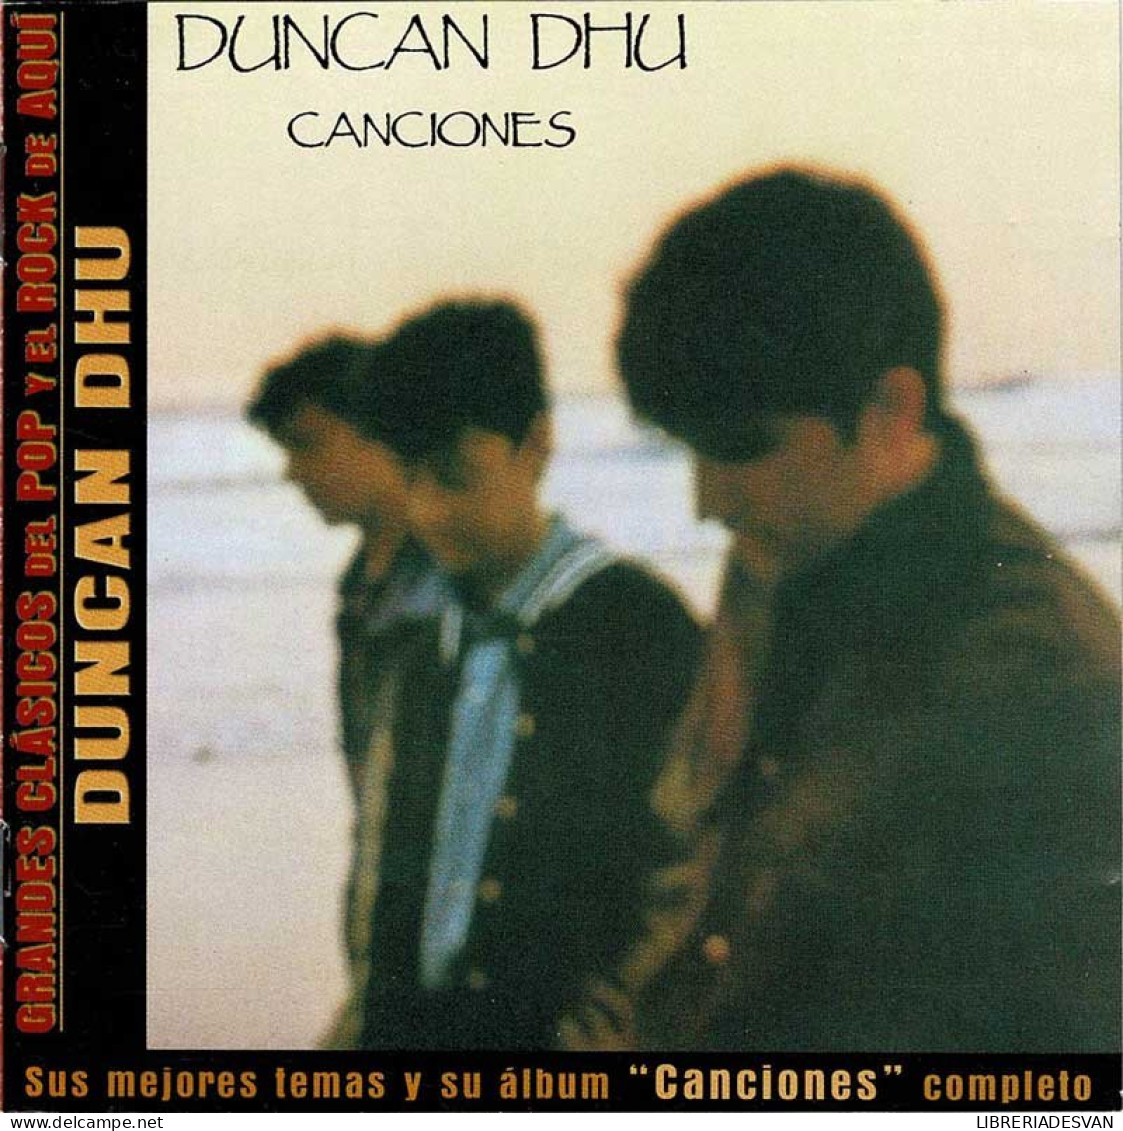 Duncan Dhu - Canciones. CD - Disco & Pop